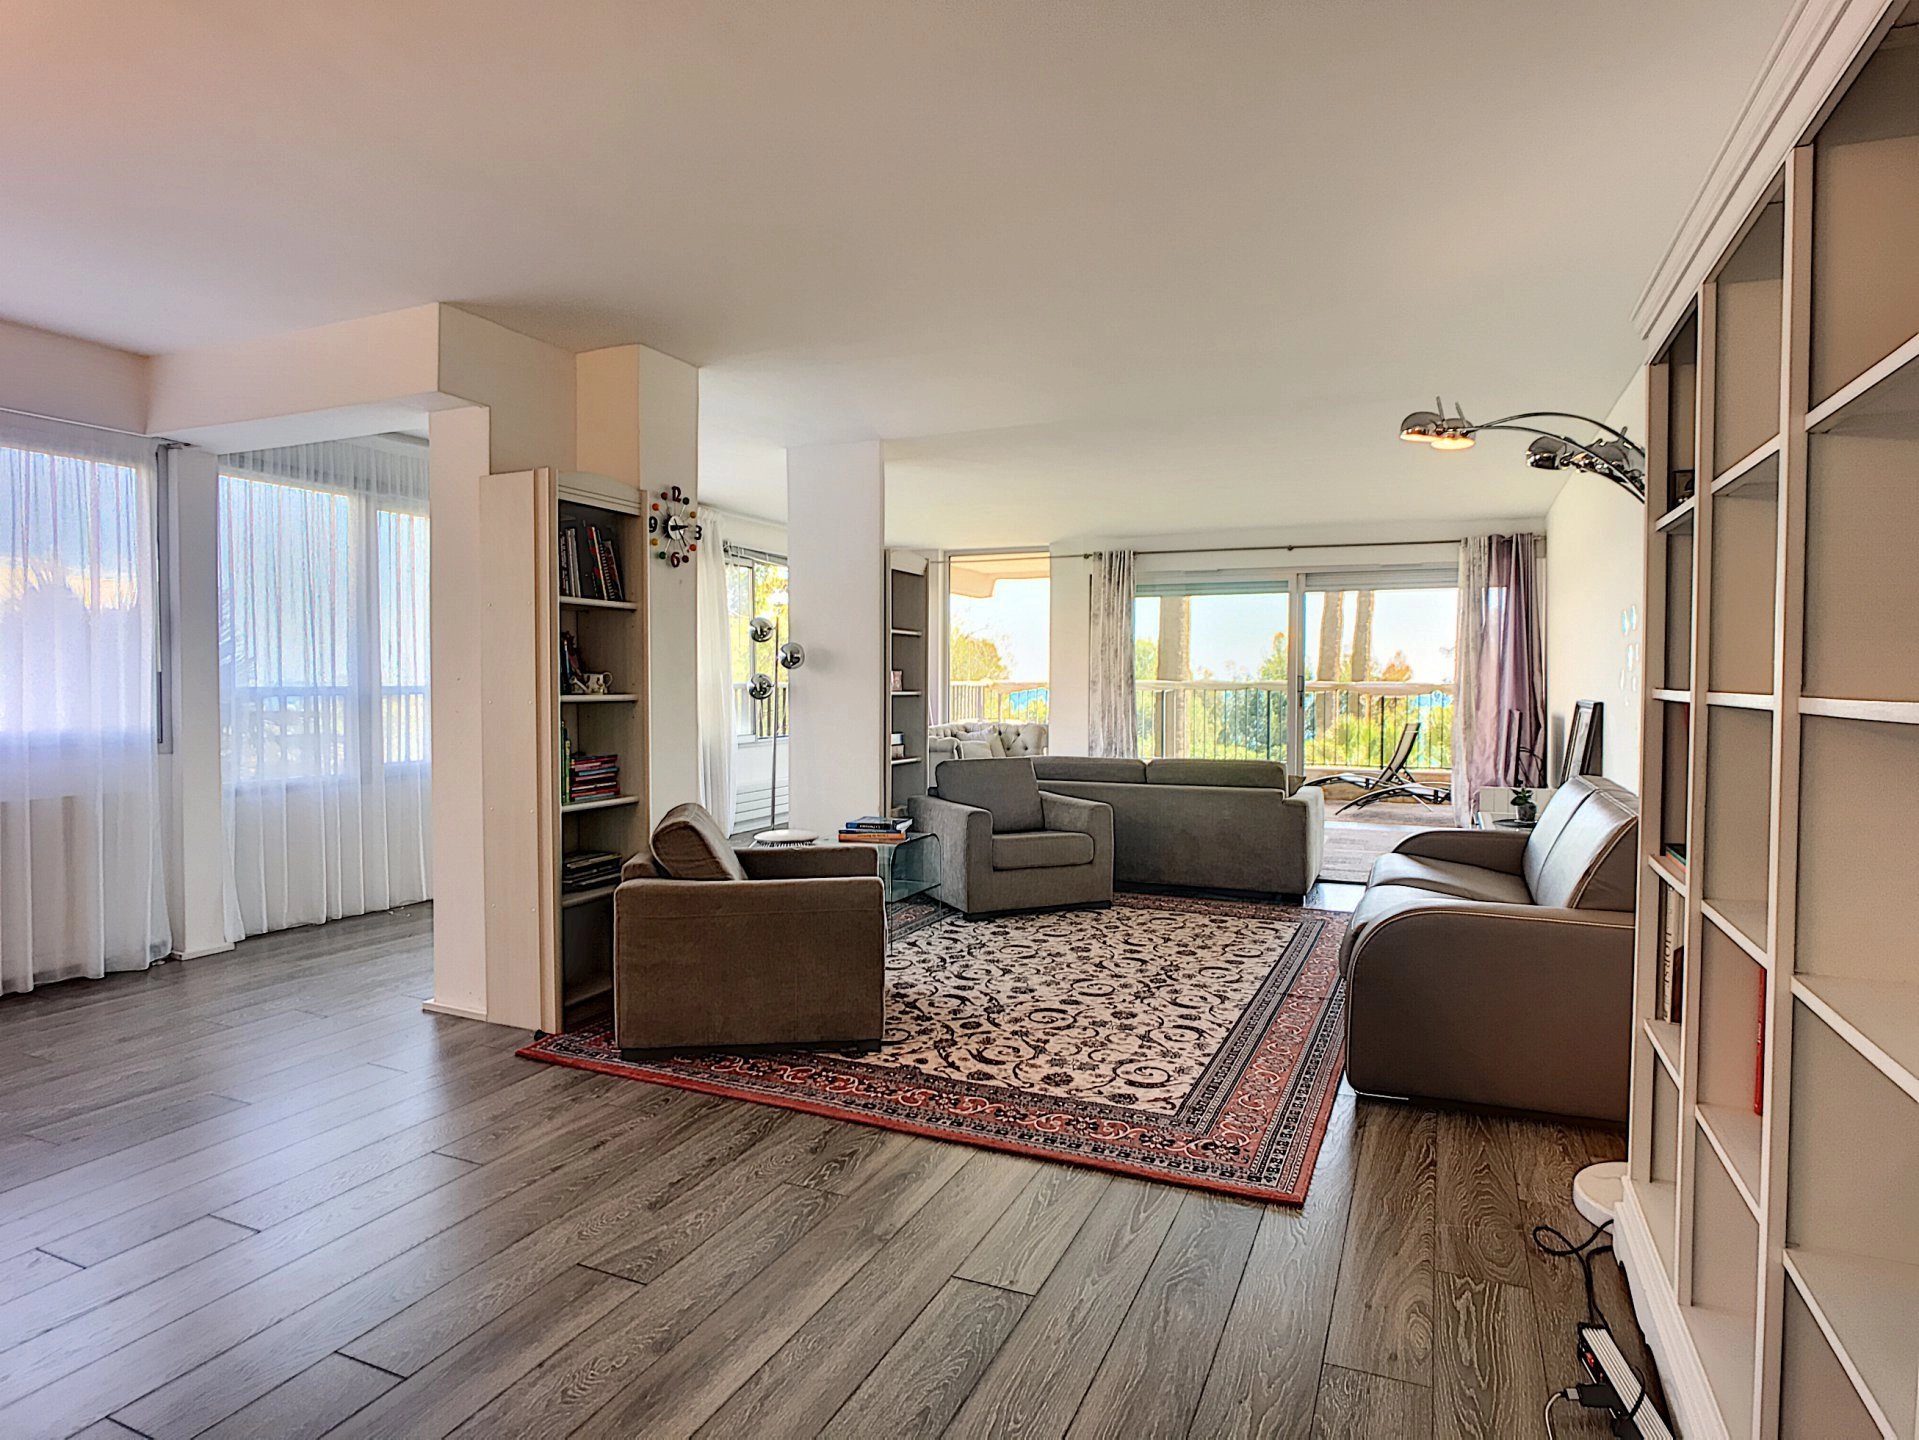 Living-room Wooden floor